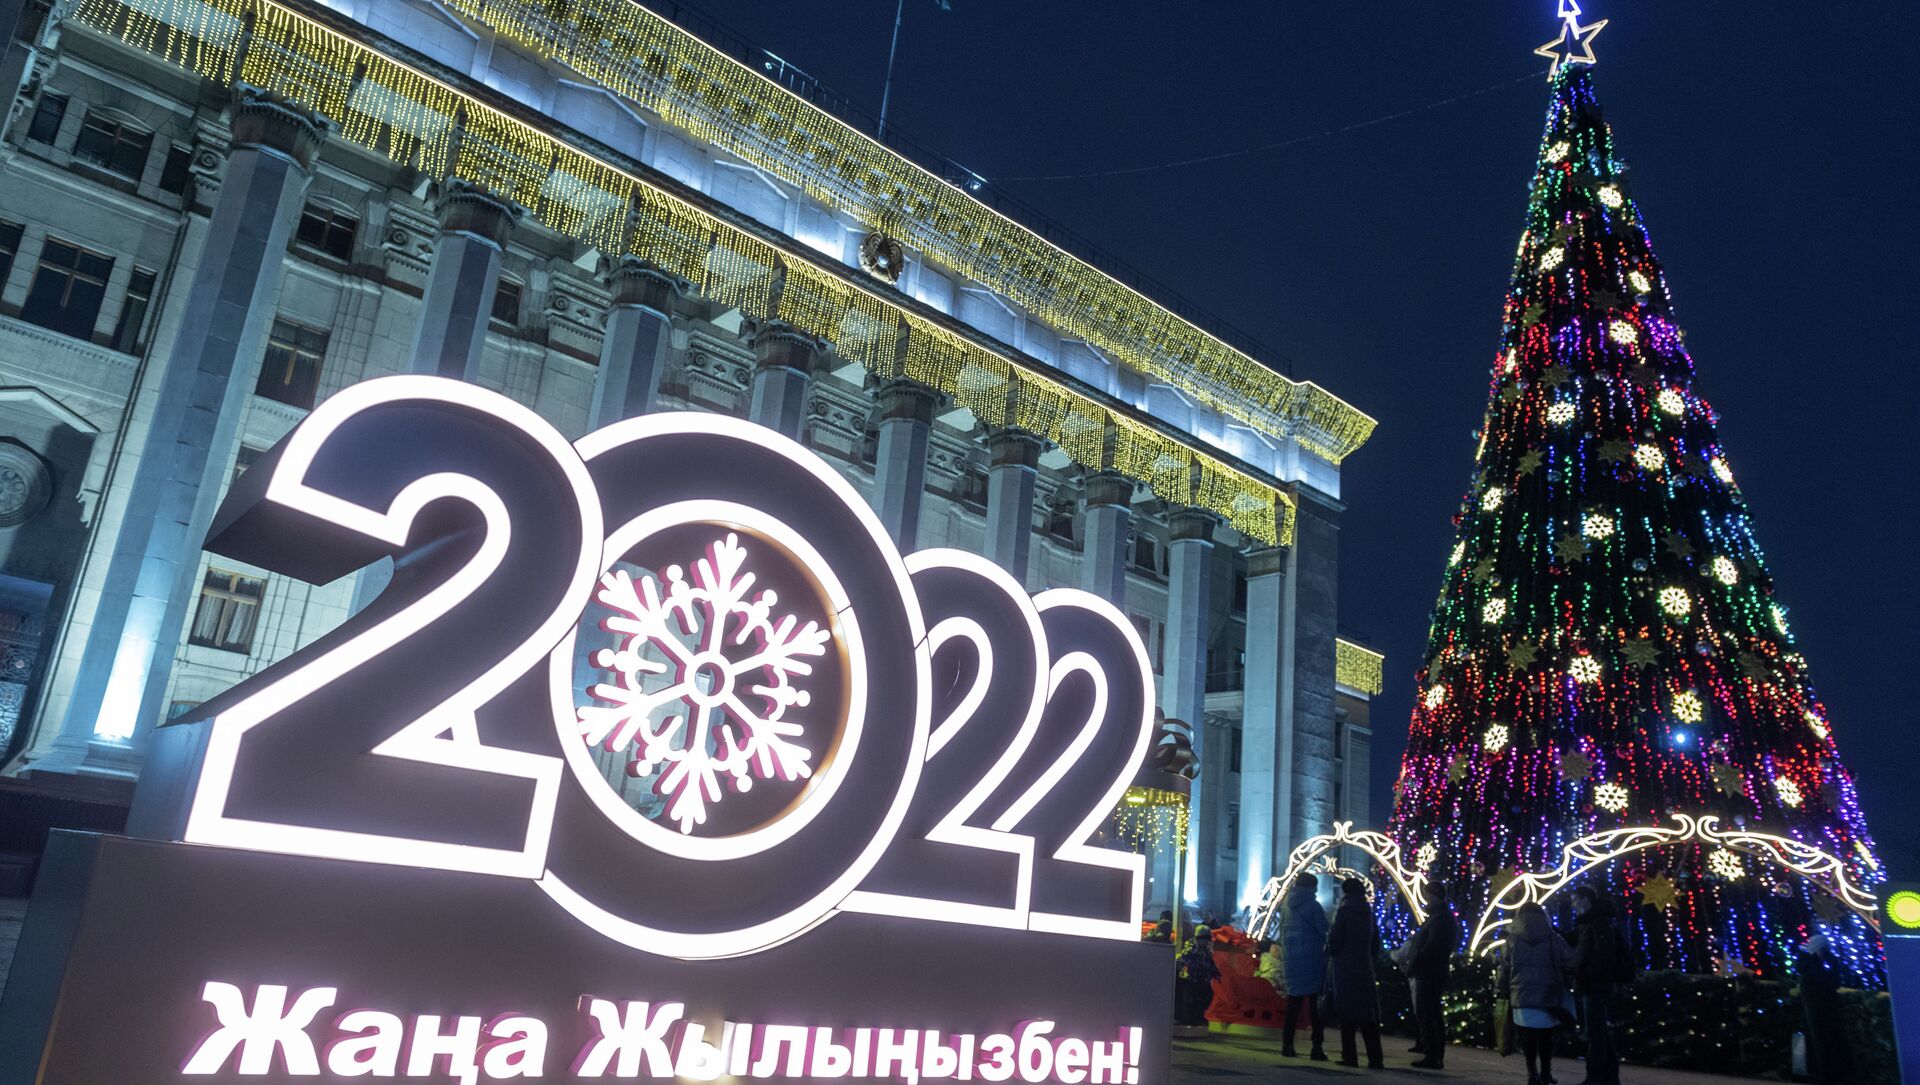 Алматы, 2022 жыл - Sputnik Қазақстан, 1920, 29.12.2021